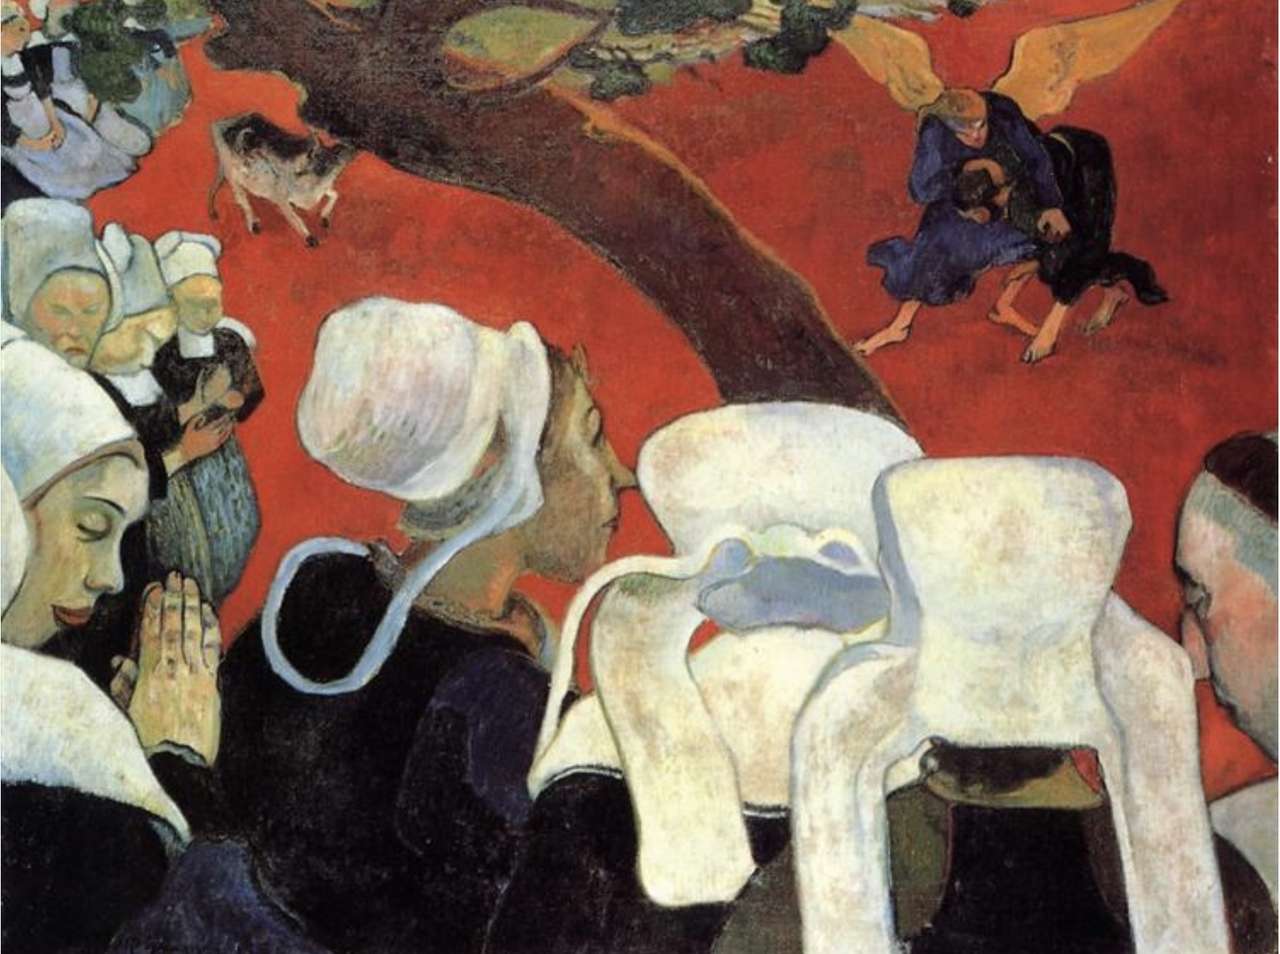 "De visie achter de preek". Paul Gauguin online puzzel